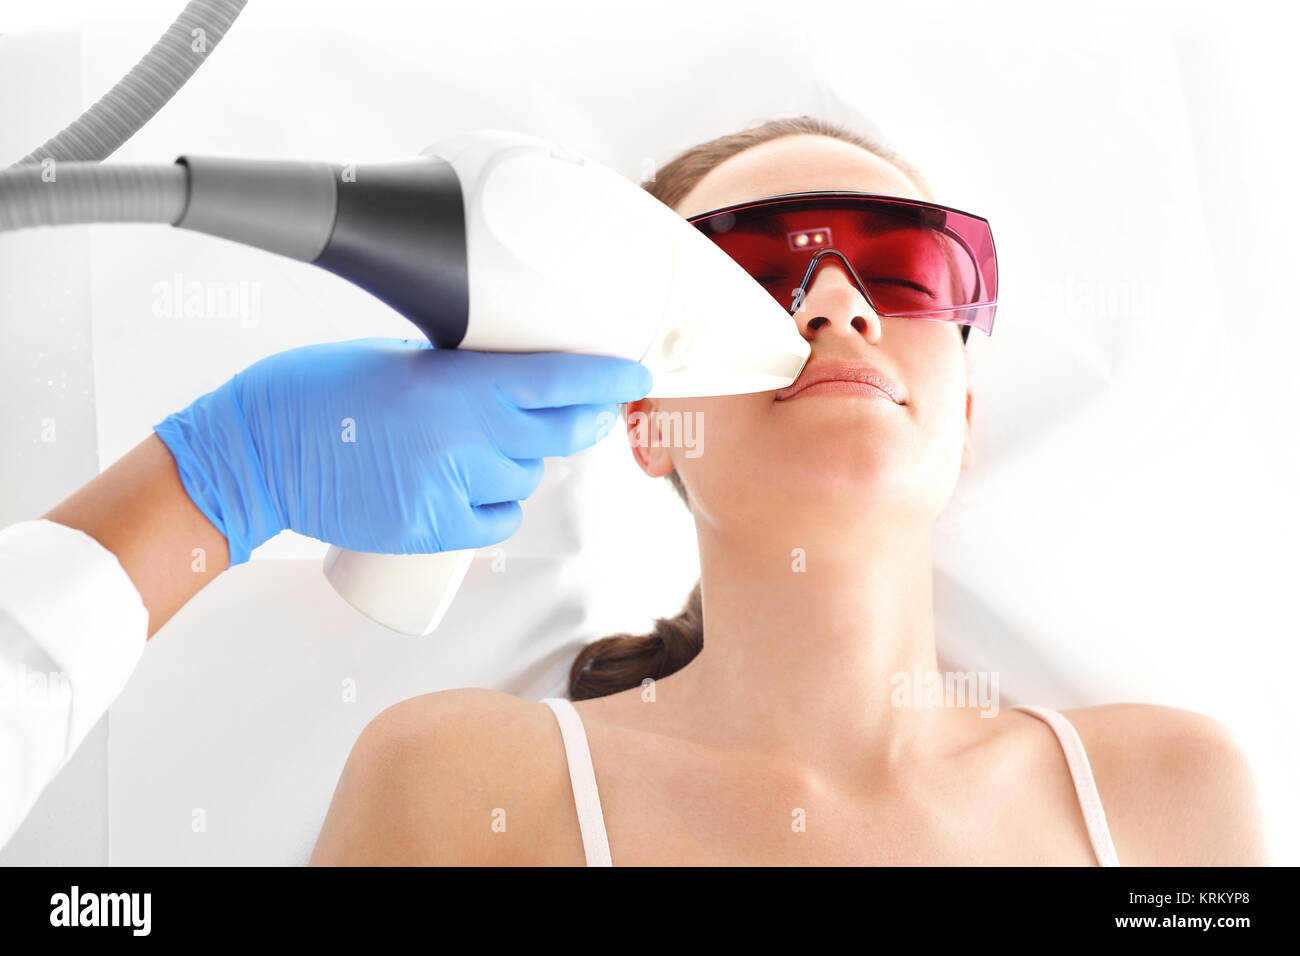 Klinika kosmetyczna, kobieta podczas zabiegu depilacji laserowej twarzy Stock Photo